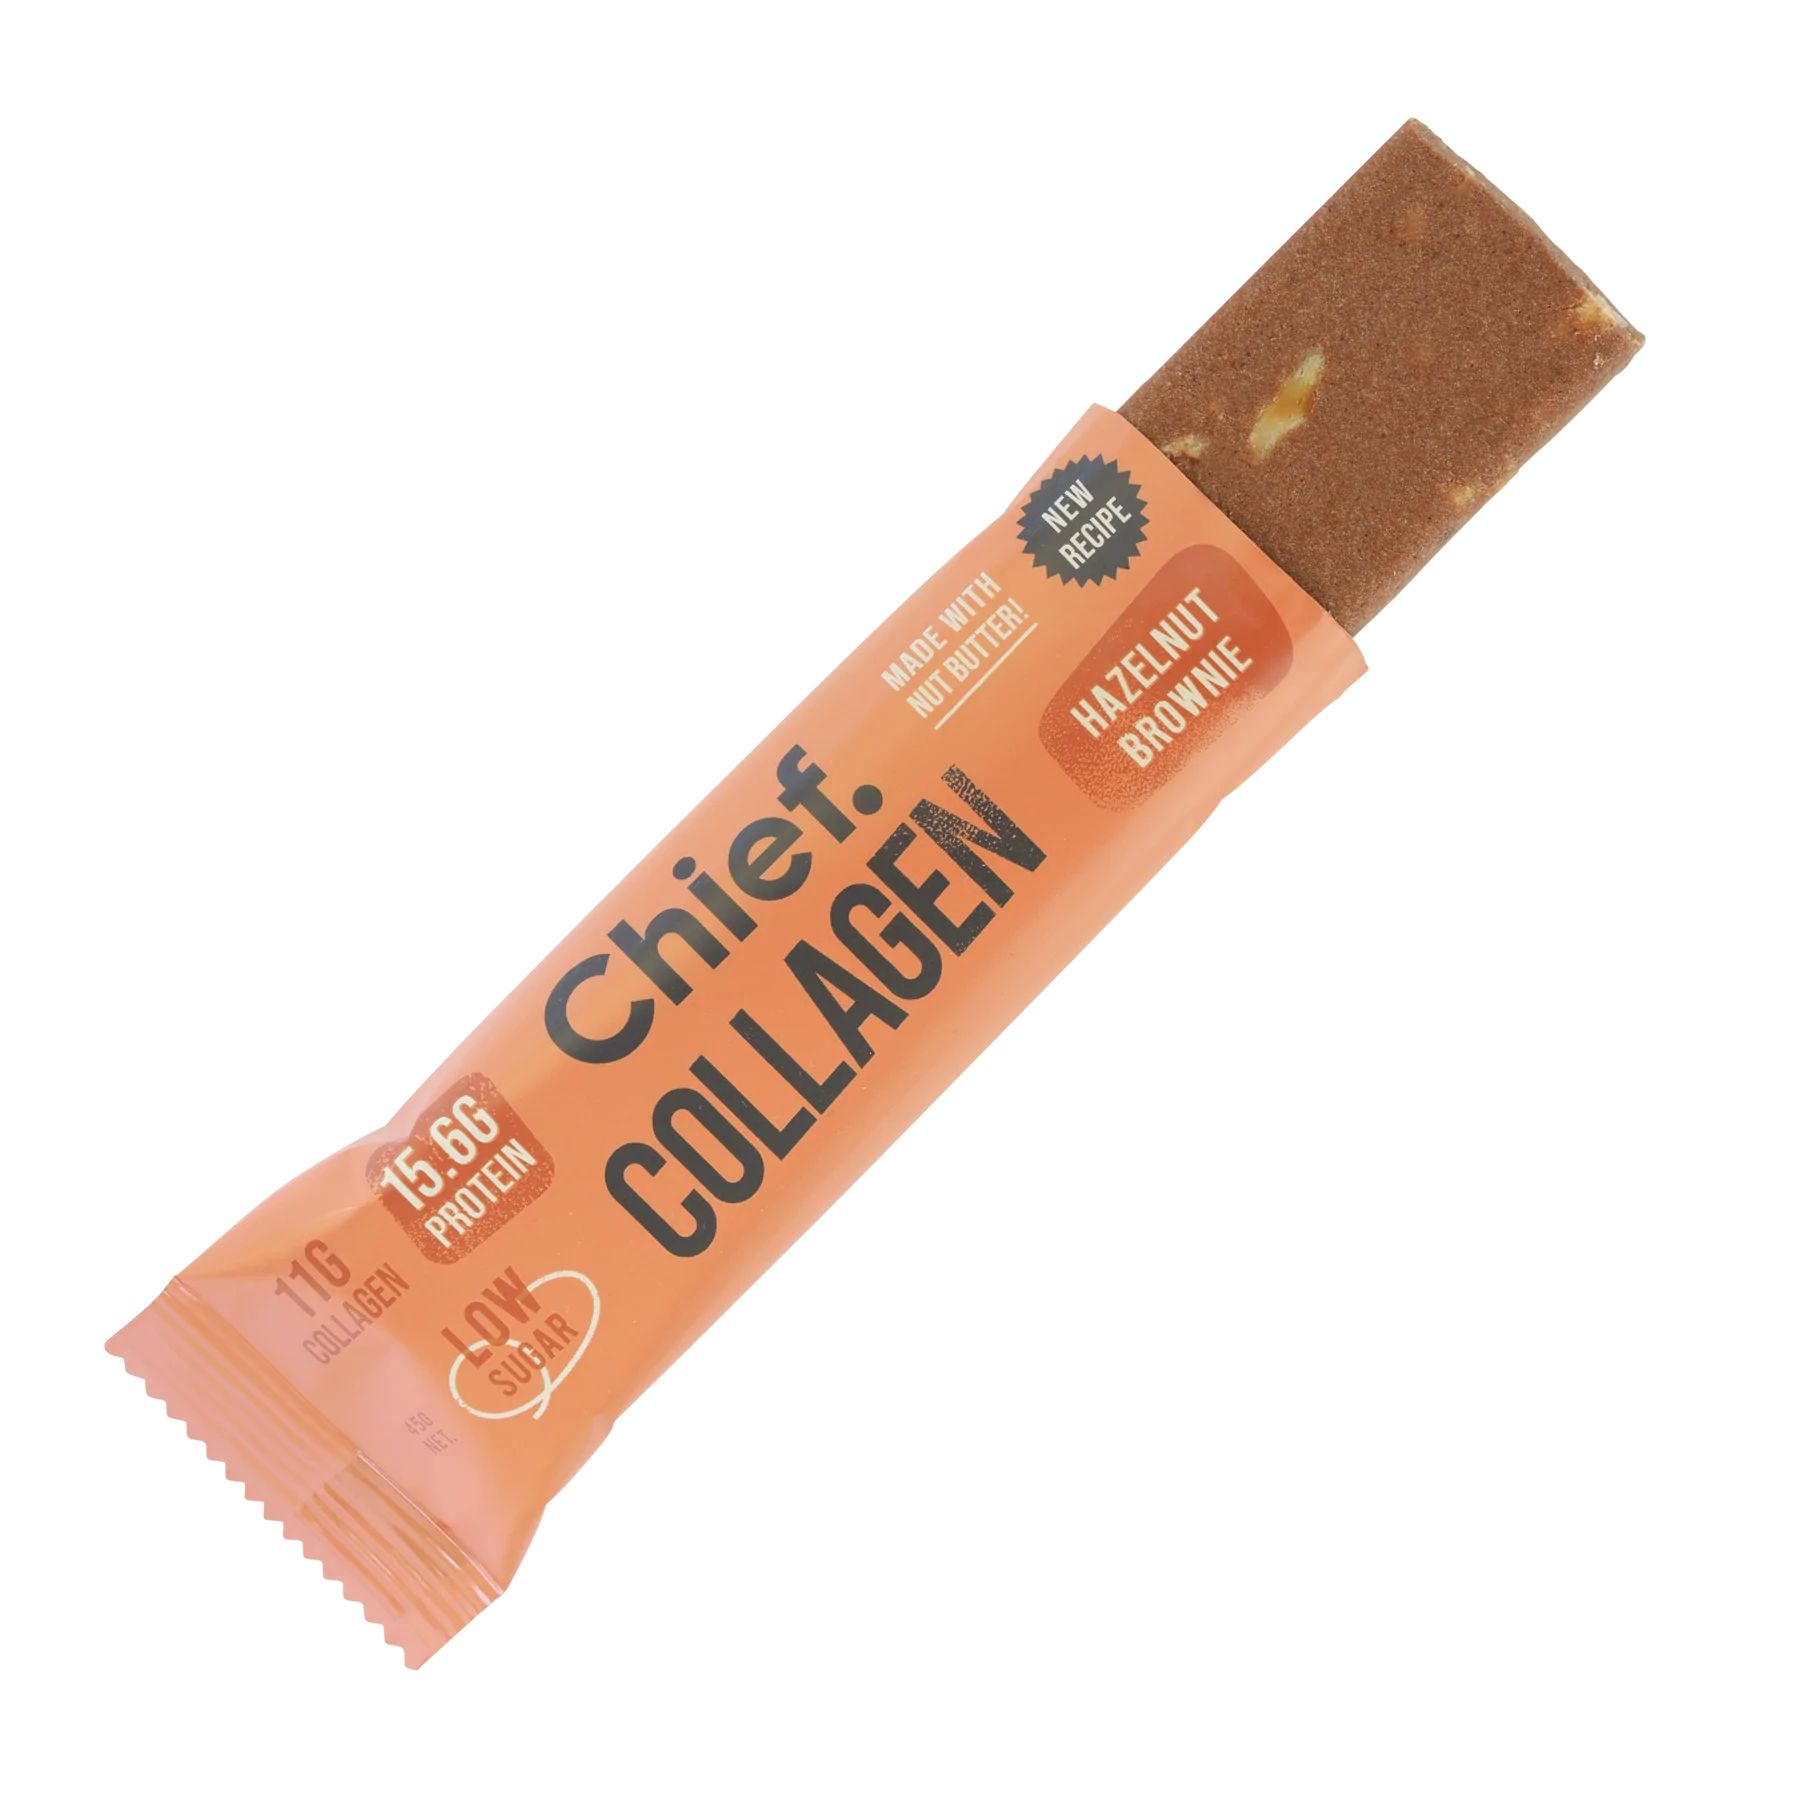 Chief Collagen Bar - Hazelnut Brownie